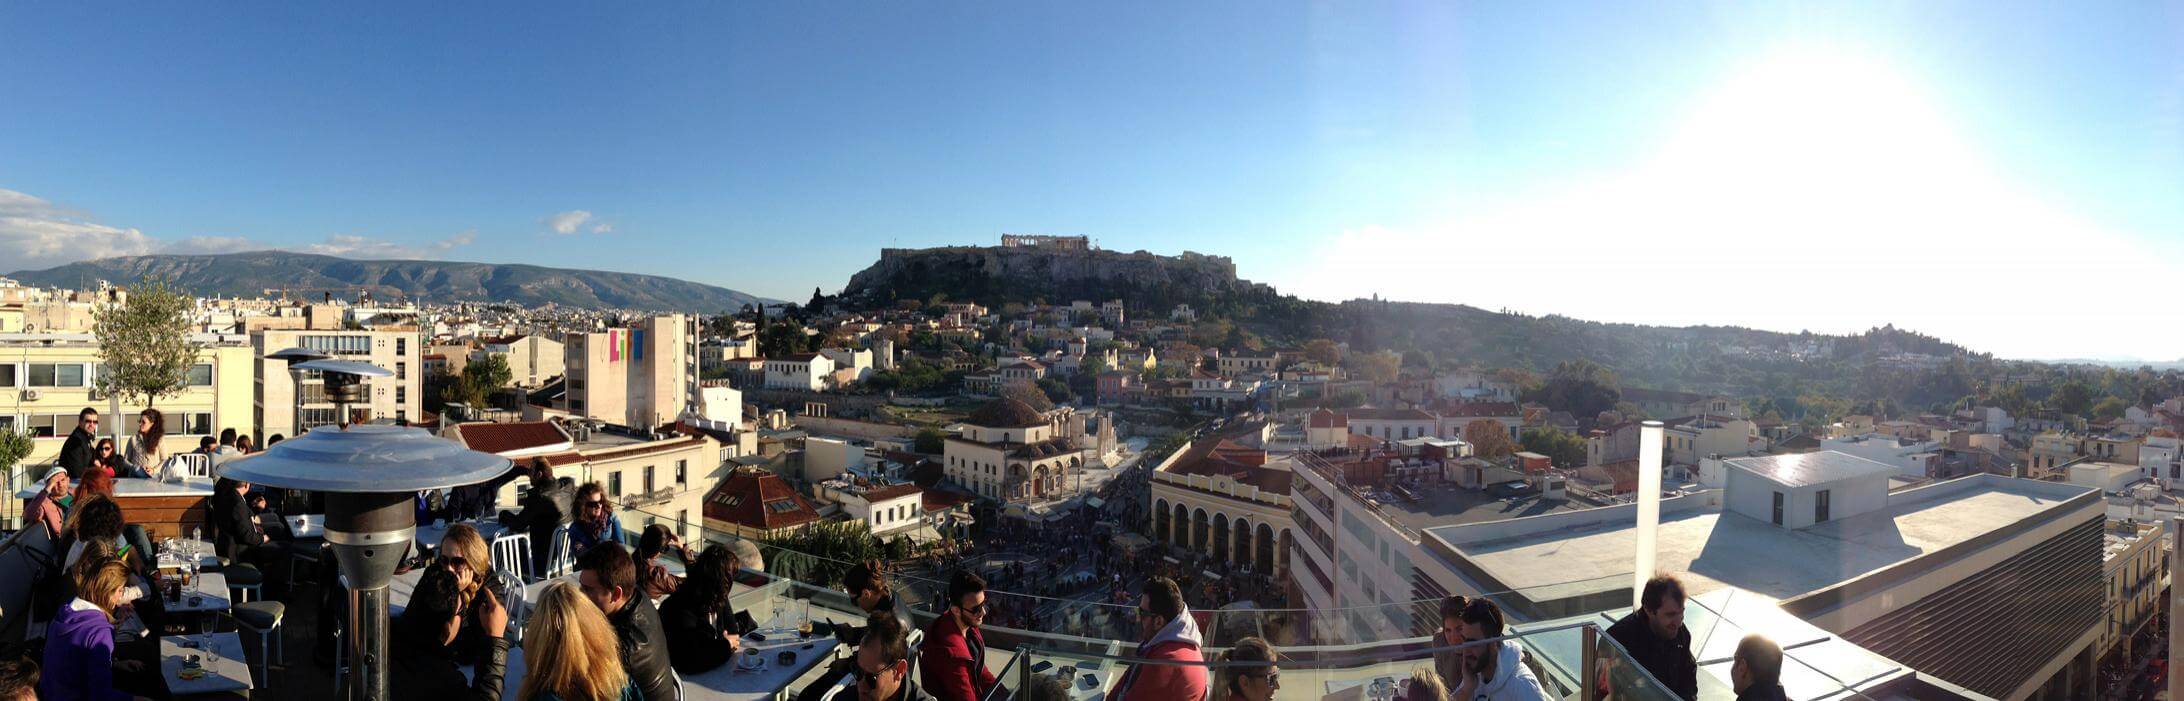 iPhone5 PanoramaAcropolis